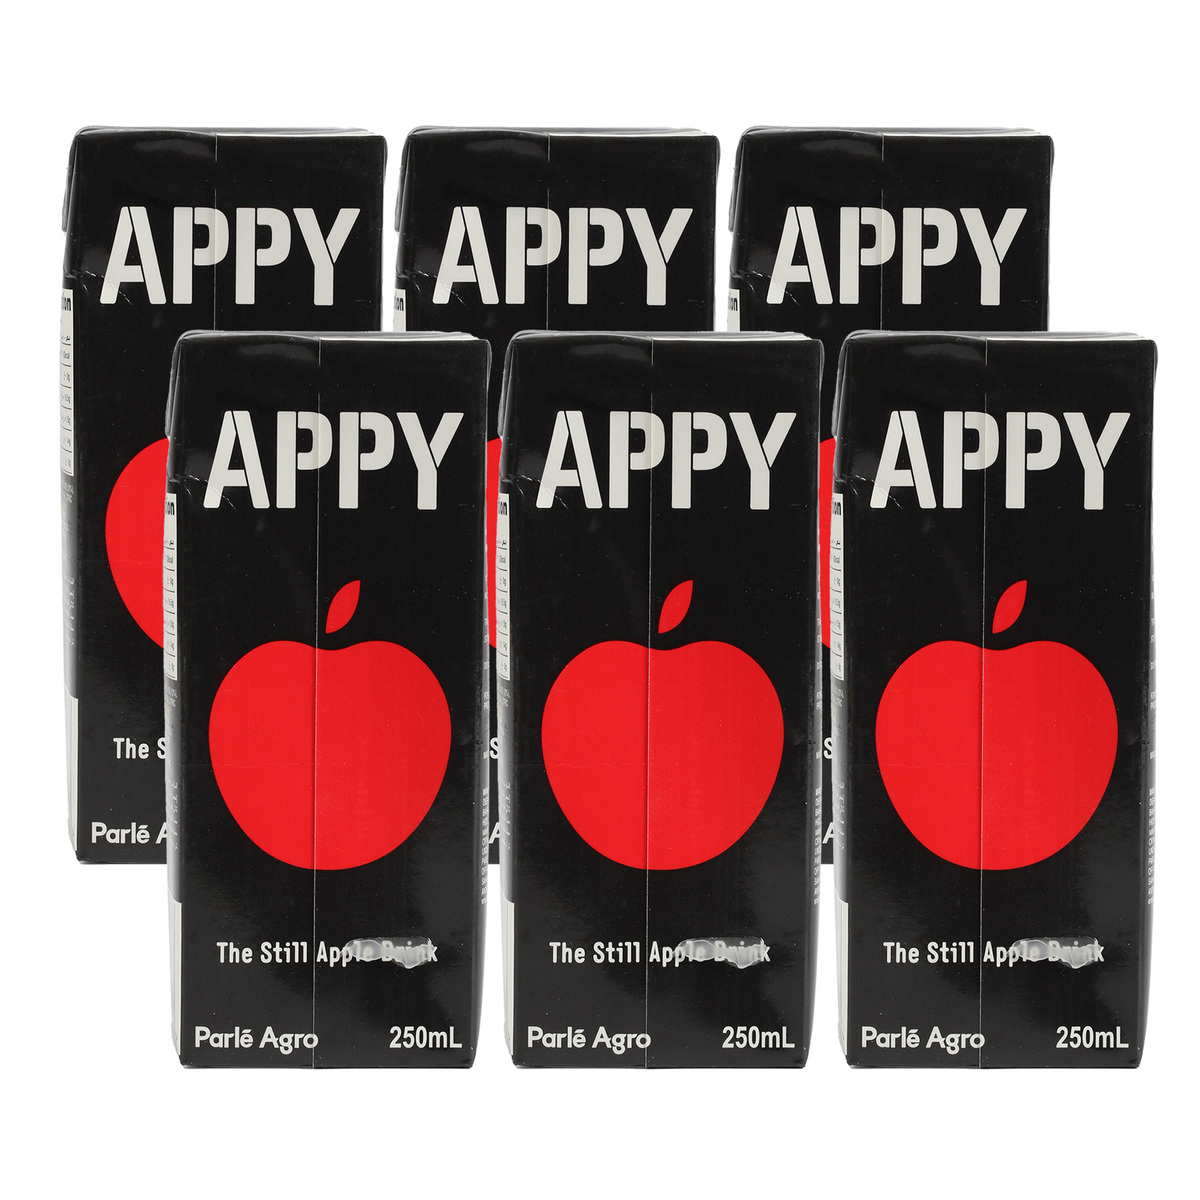 Appy Apple Drink 6 x 250 ml